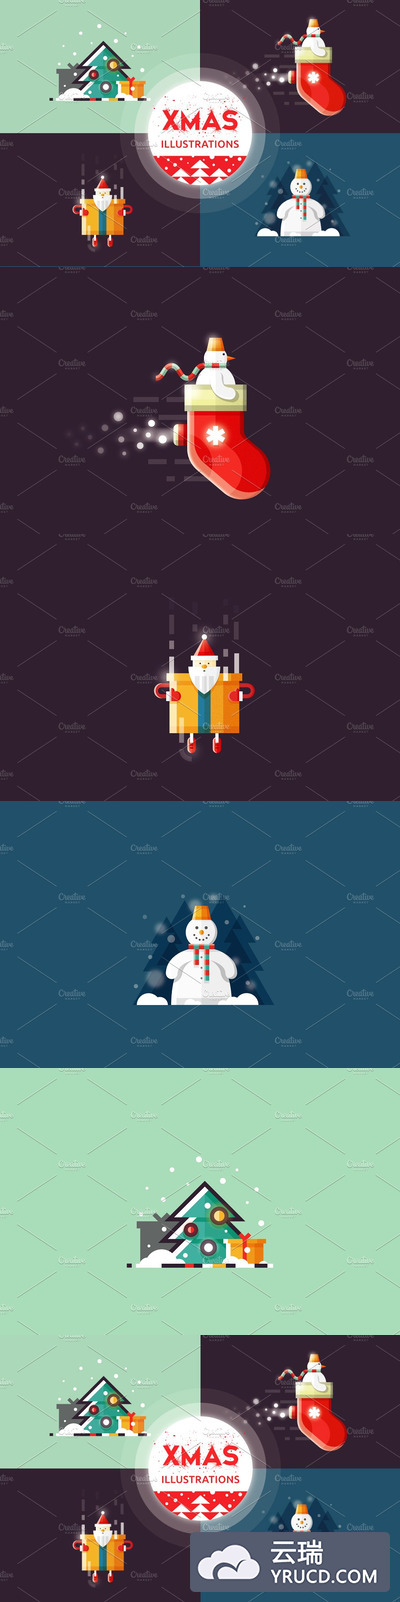 圣诞节元素插画 Christmas illustrations